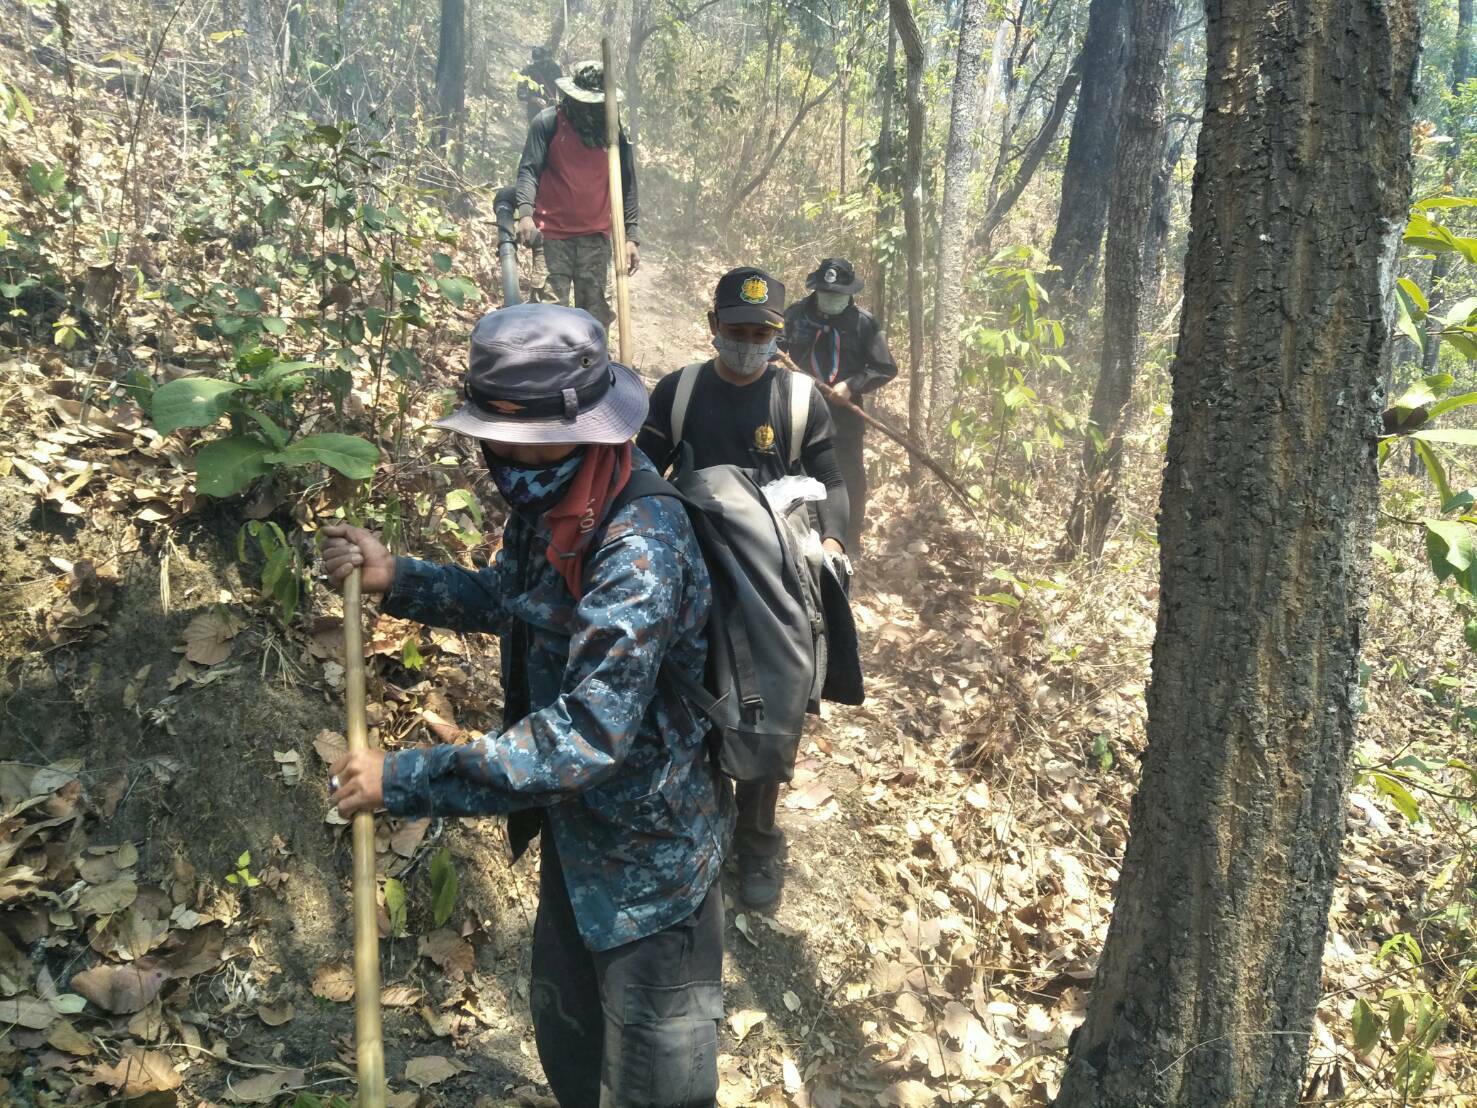 กรมป่าไม้สร้างเครือข่ายไฟป่า ช่วยปชช.ชาวไทยบนที่สูง บ้านแม่เกิบ เชียงใหม่ ยกระดับคุณภาพชีวิตปชช.